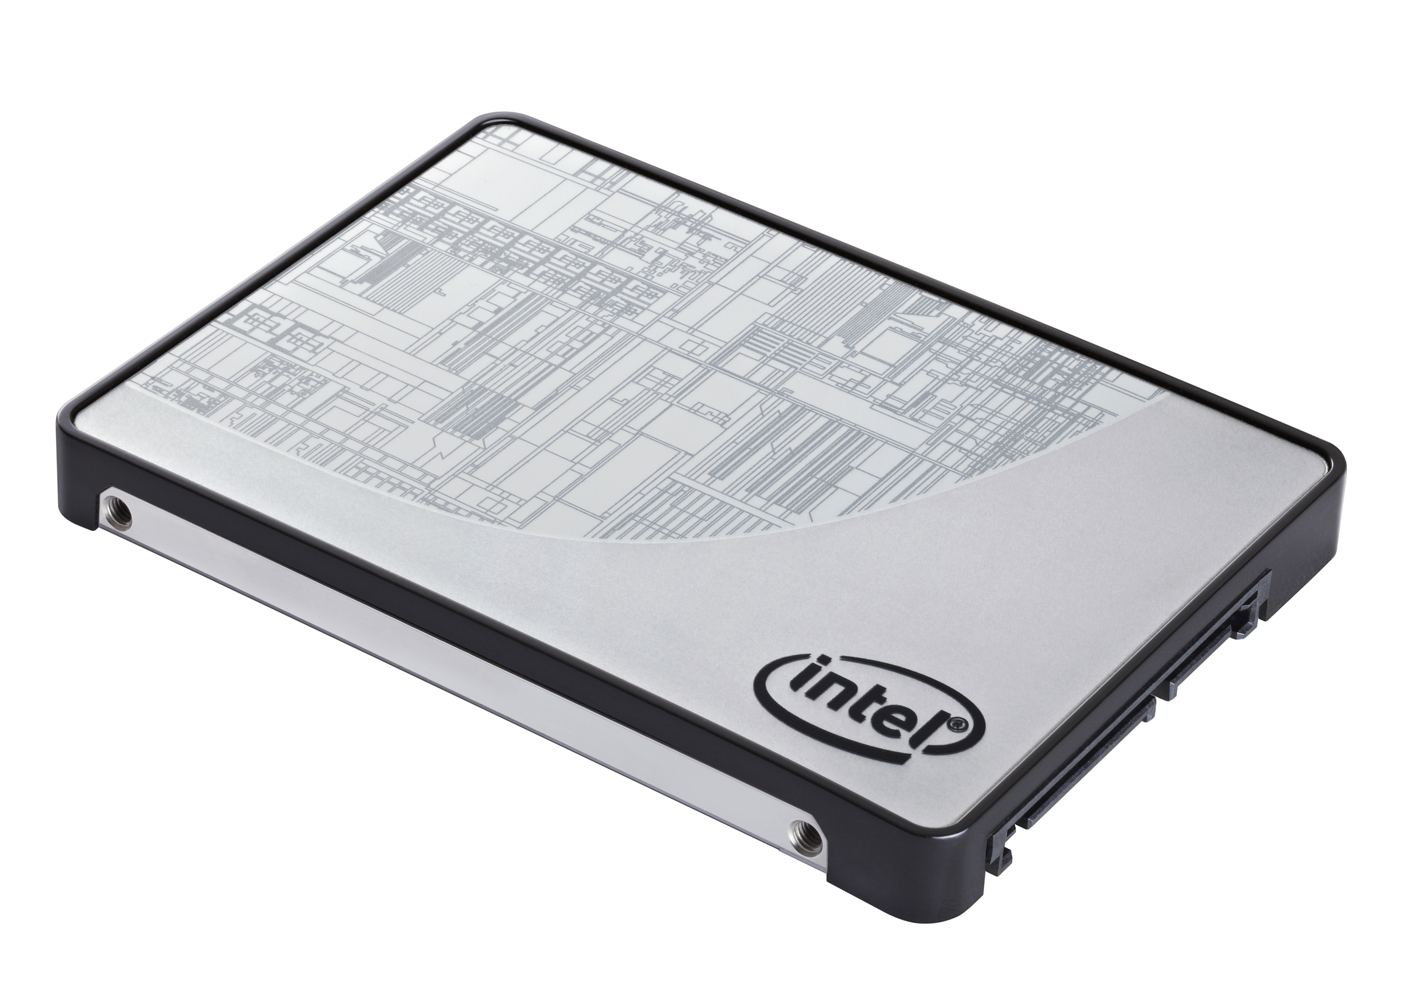 Immagine pubblicata in relazione al seguente contenuto: Intel aggiunge una soluzione da 180GB alla linea SSD 335 Series | Nome immagine: news18876_Intel-SSD-335-Series-180-GB_1.jpg